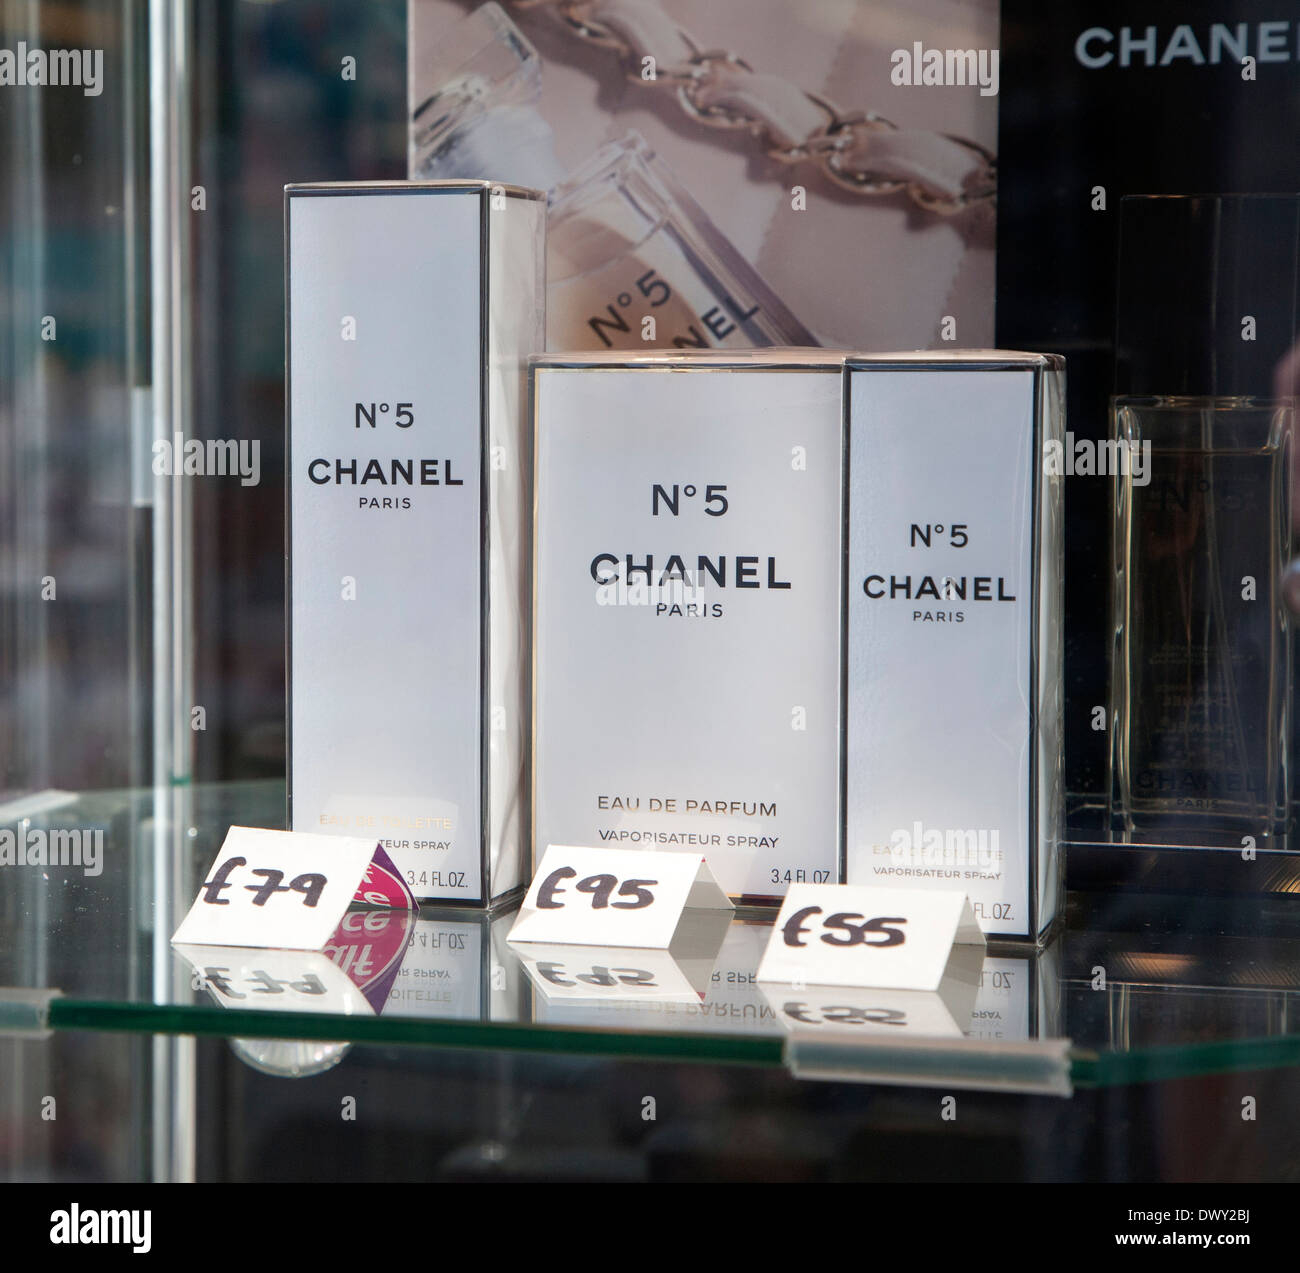 Parfum Chanel Nr 5 Stockfotos Und Bilder Kaufen Alamy